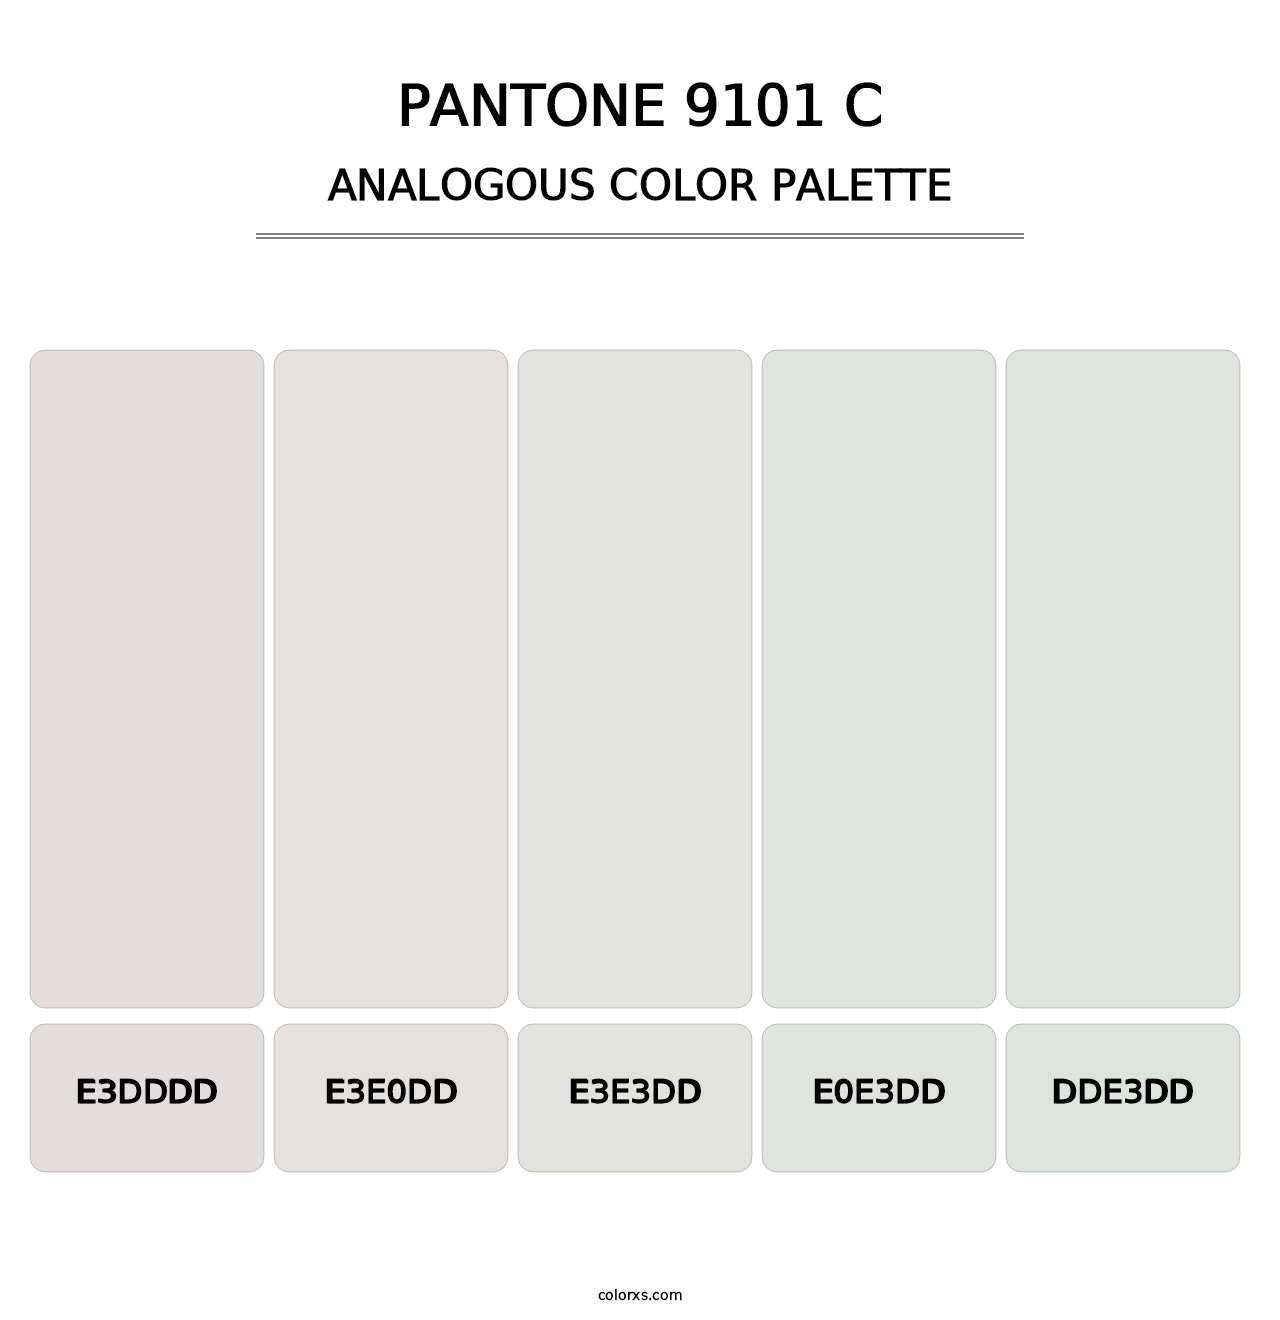 PANTONE 9101 C - Analogous Color Palette